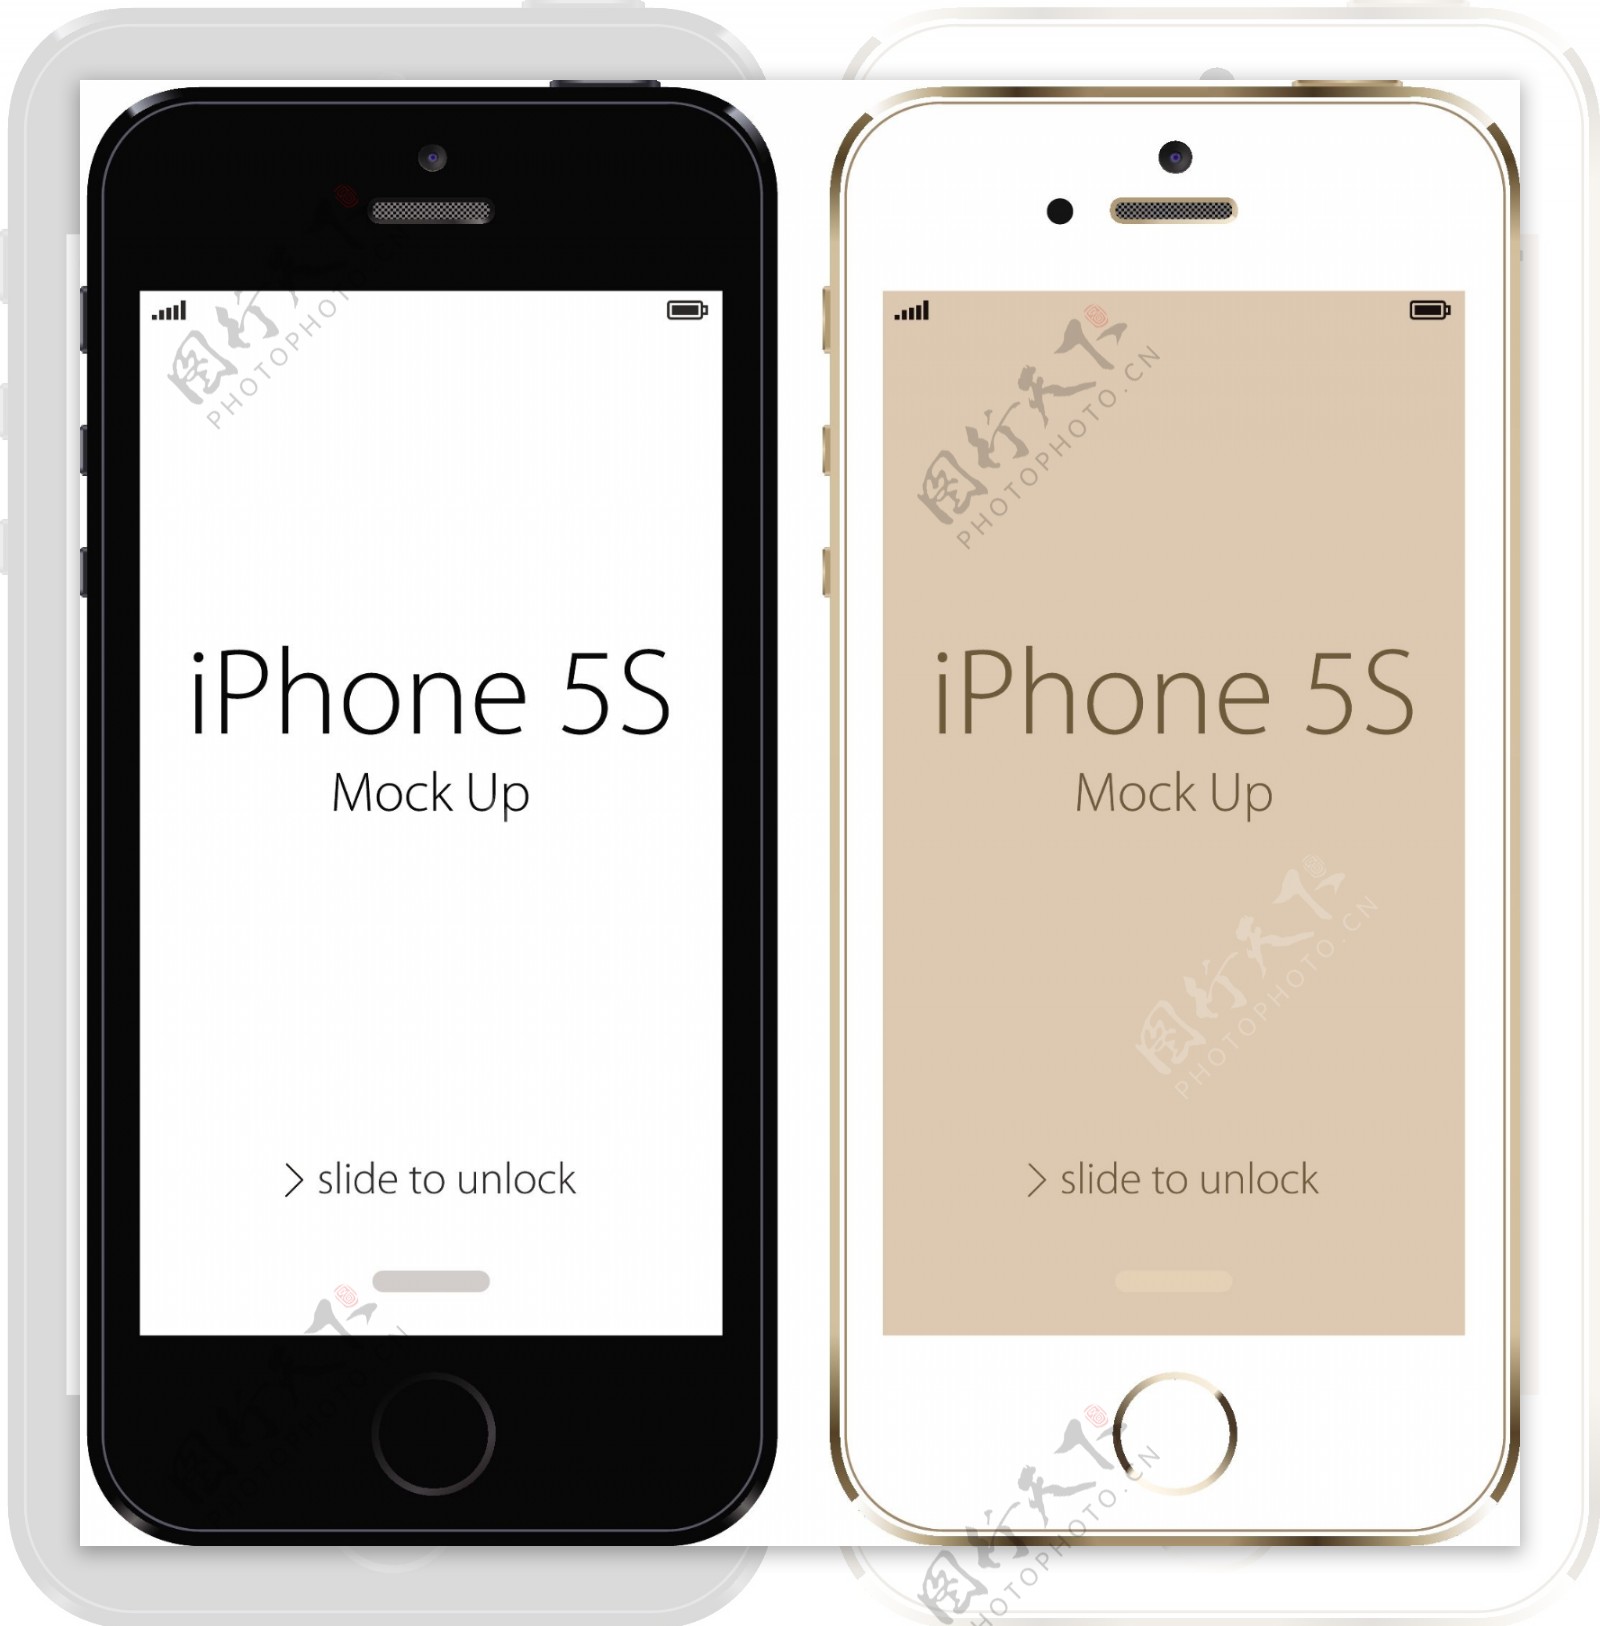 2个苹果iphone5s矢量素材